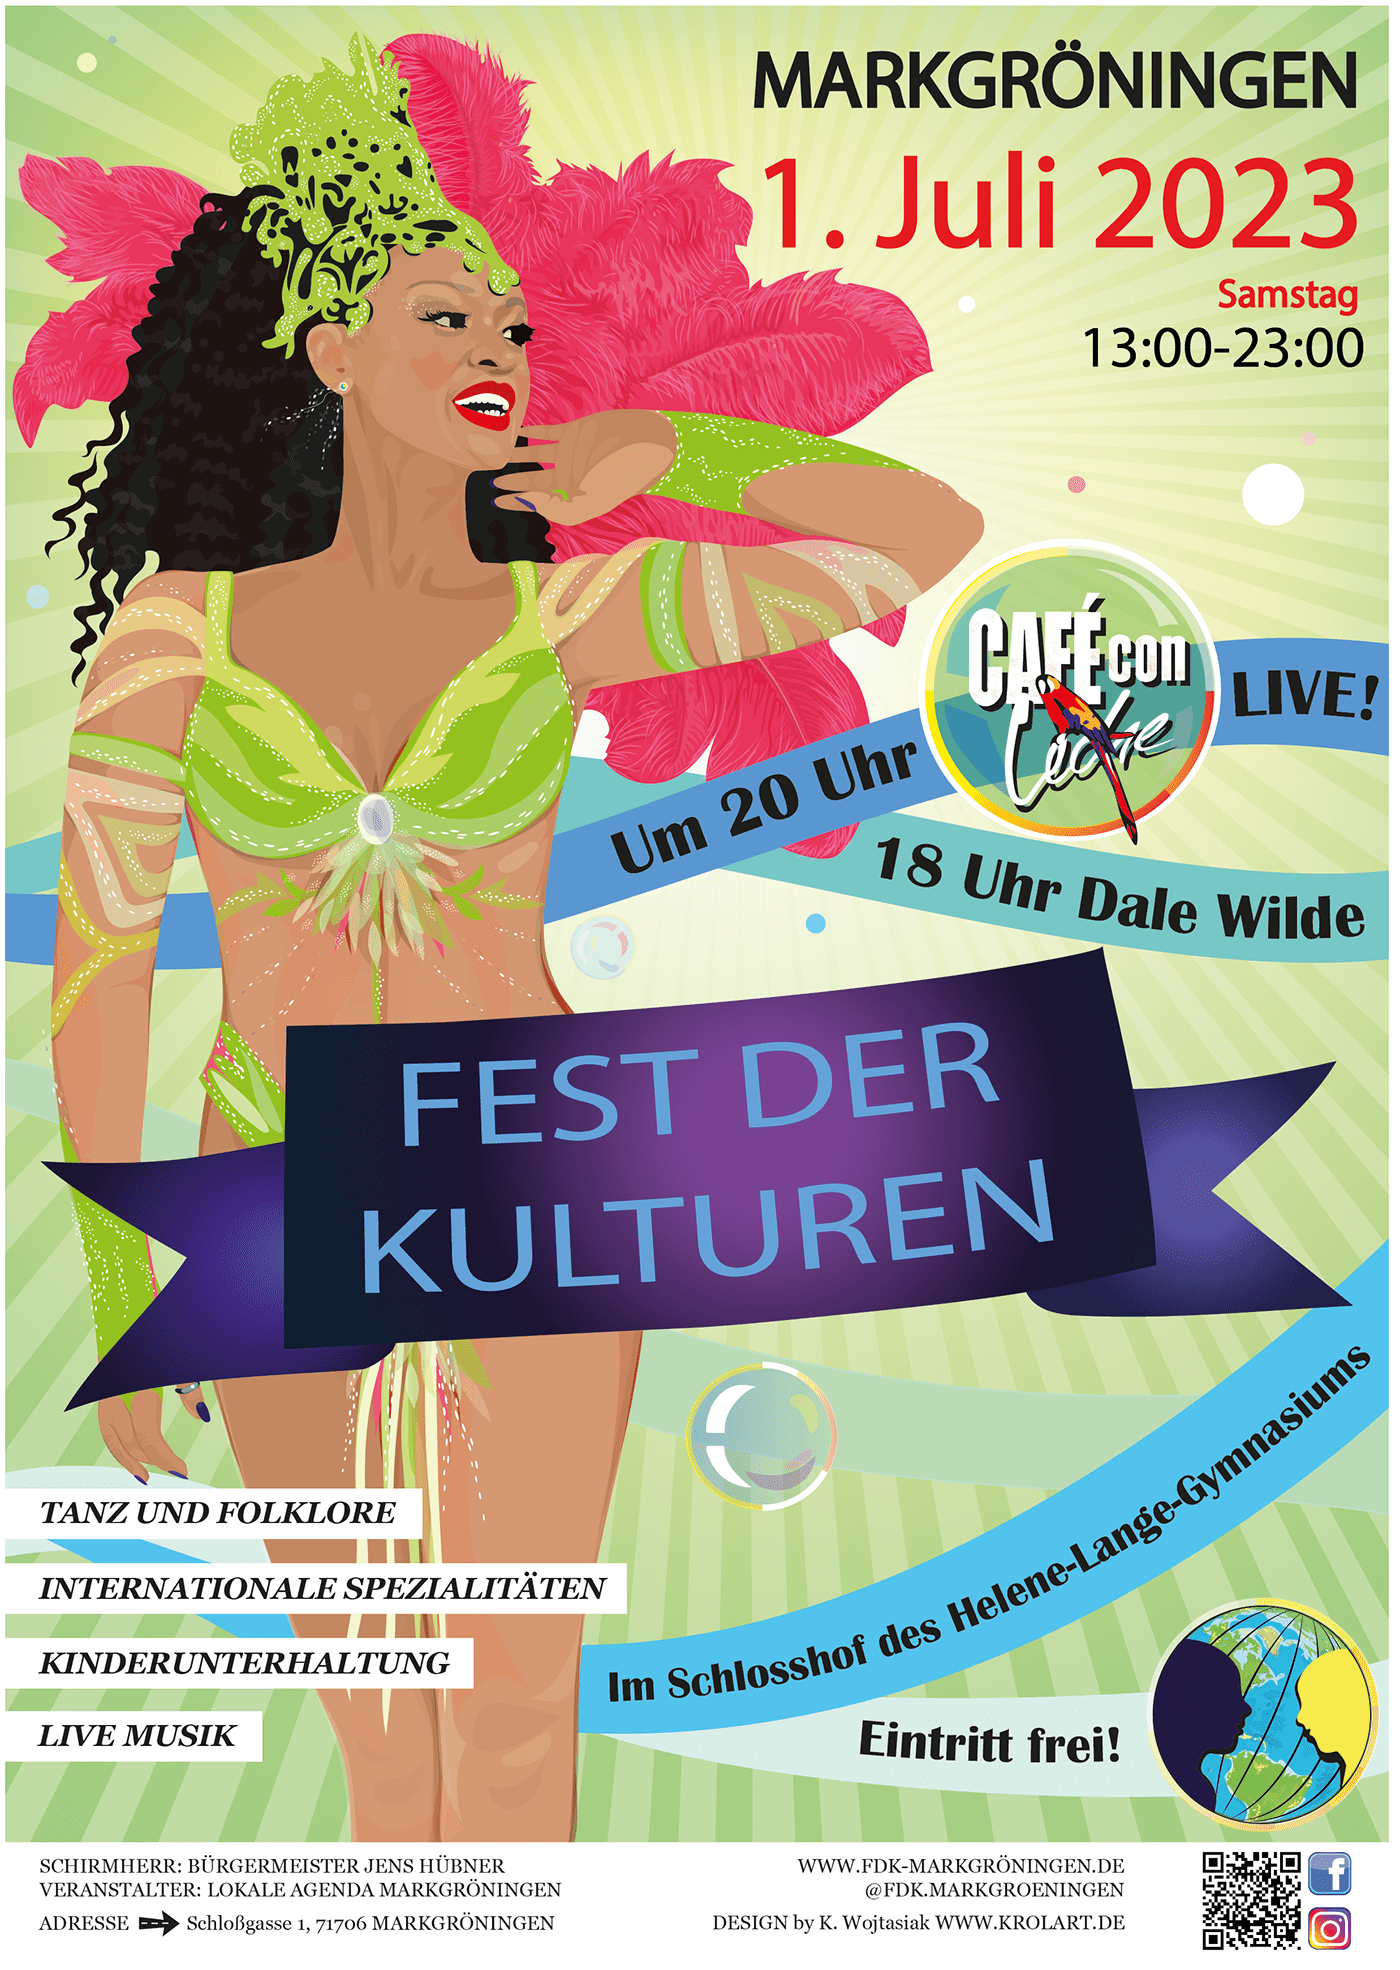 krolart wojtasiak katarzyna festival Event festival poster adobe illustrator Graphic Designer markgröningen